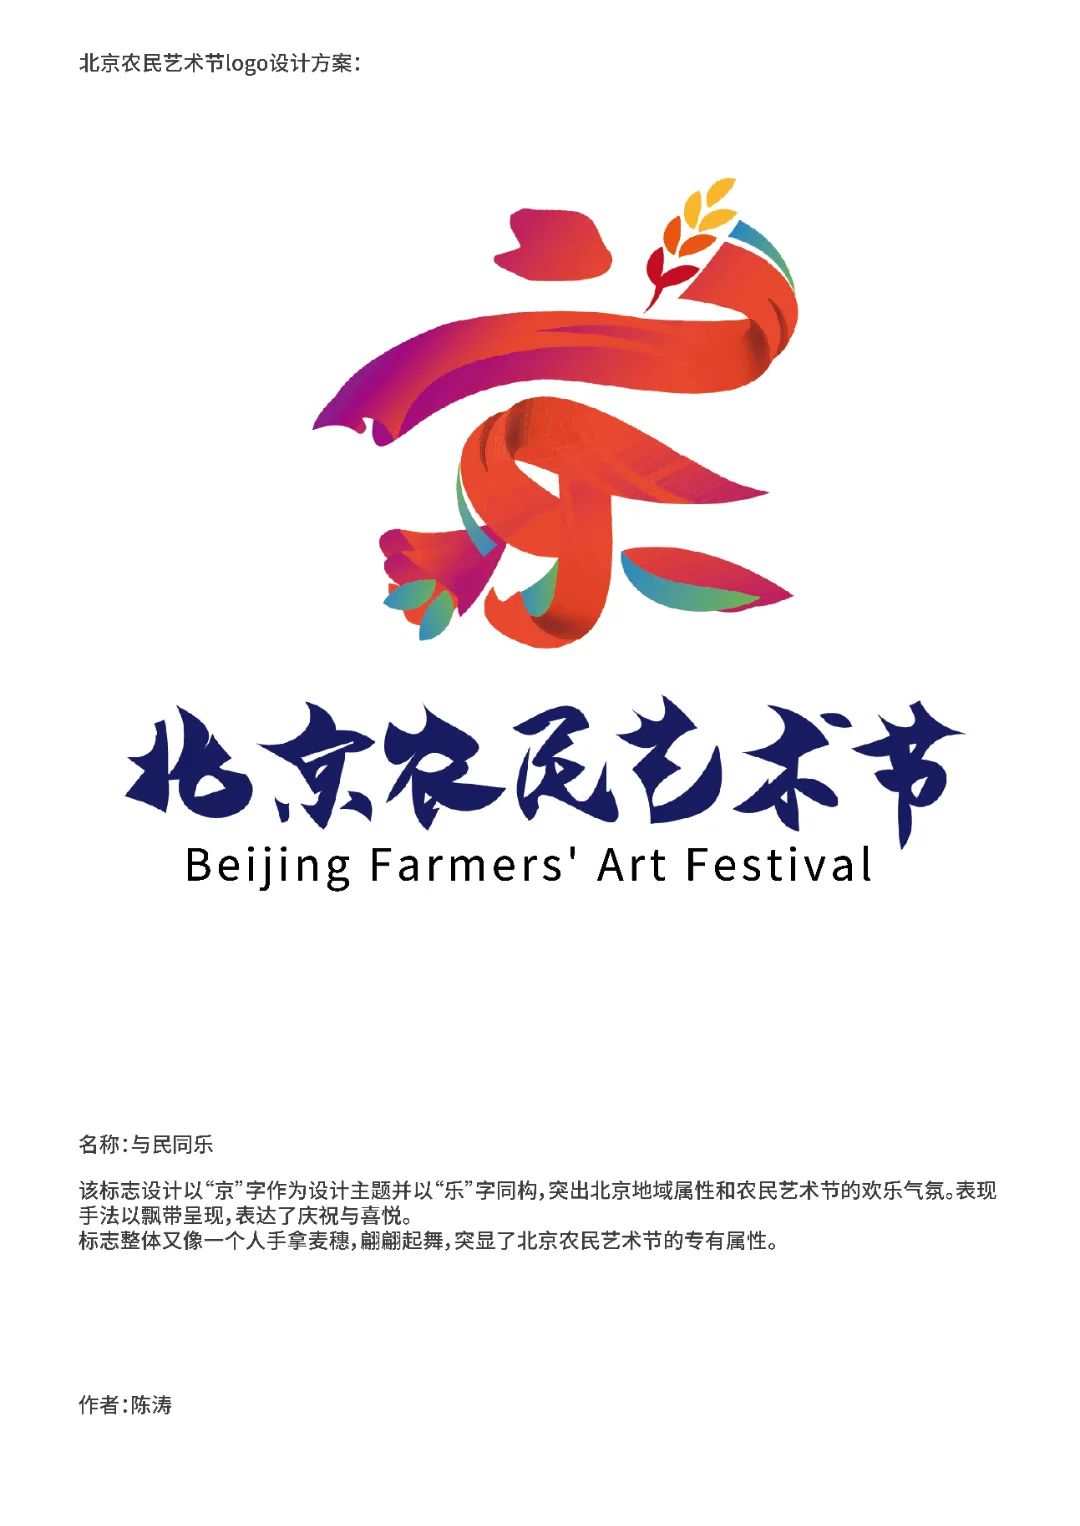 北京农民艺术节logo征集活动 入围作品公示